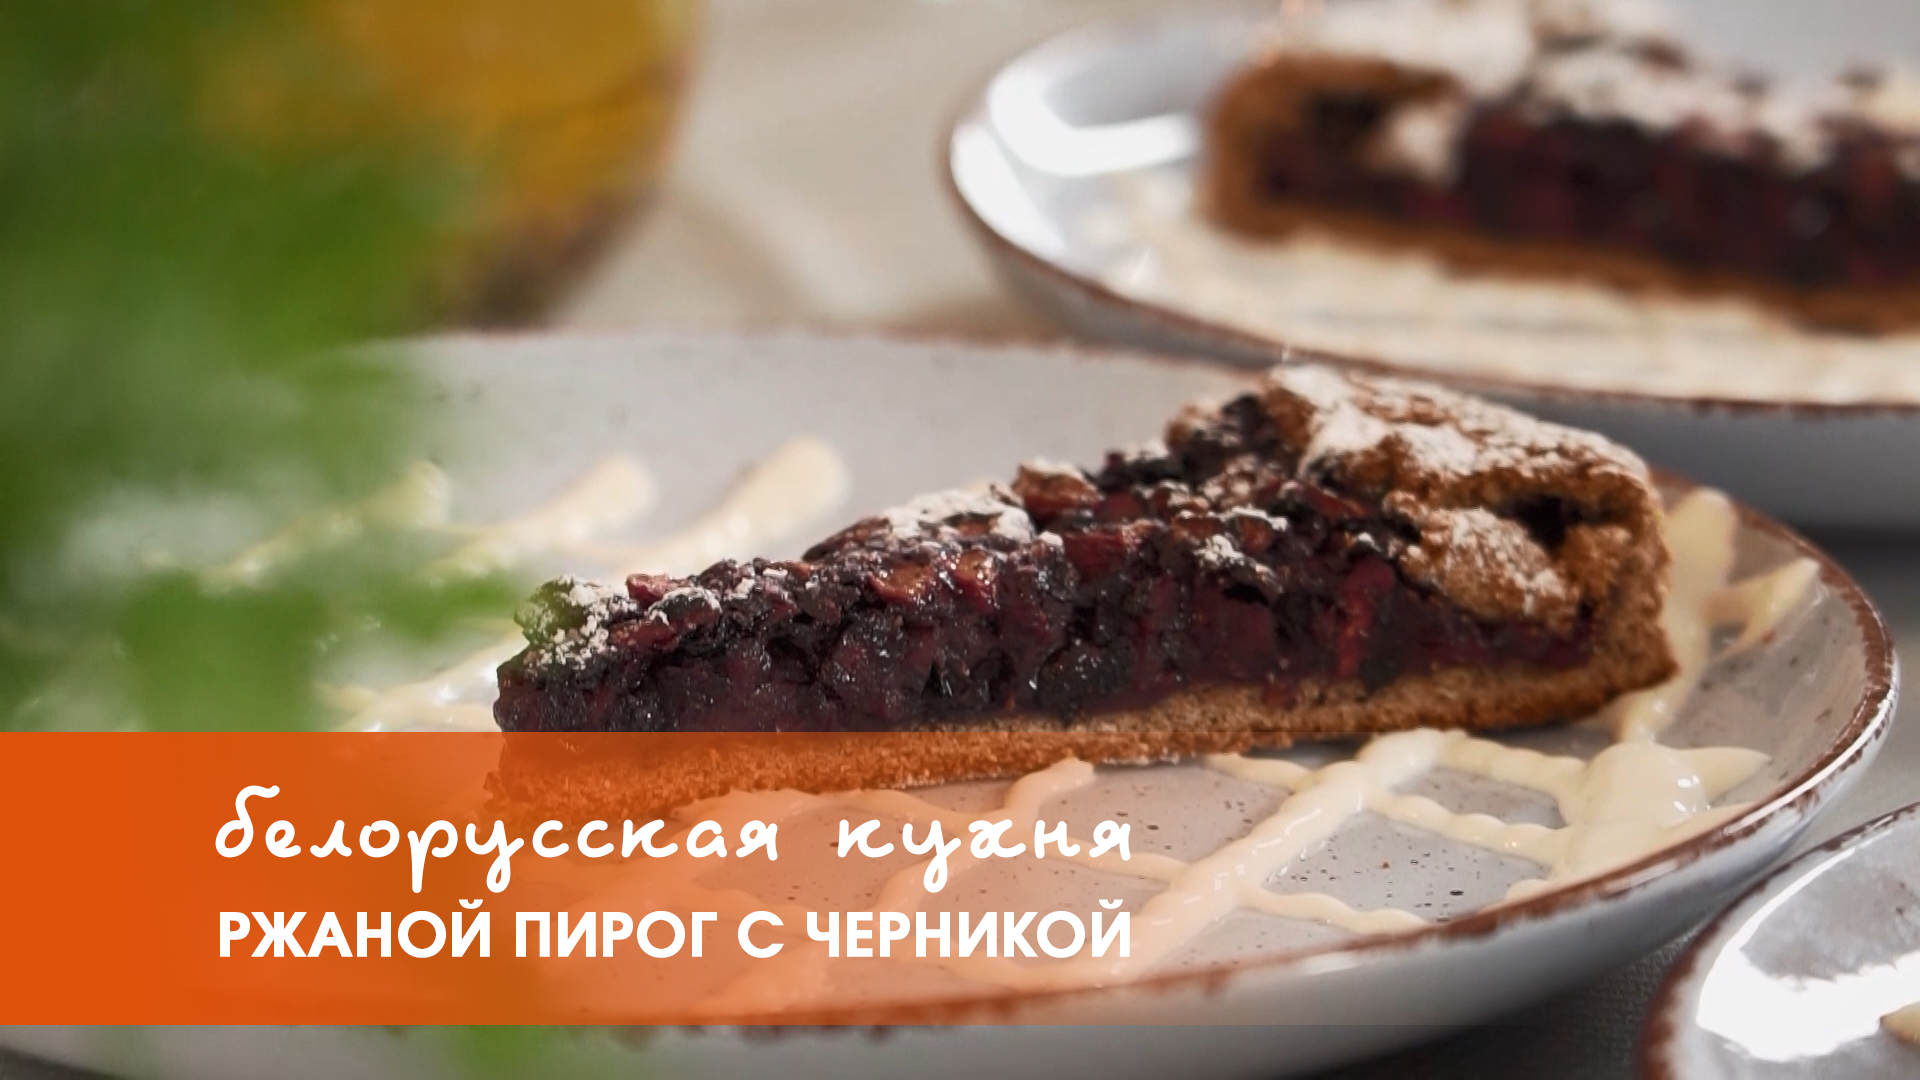 Белорусская кухня: ржаной пирог с черникой